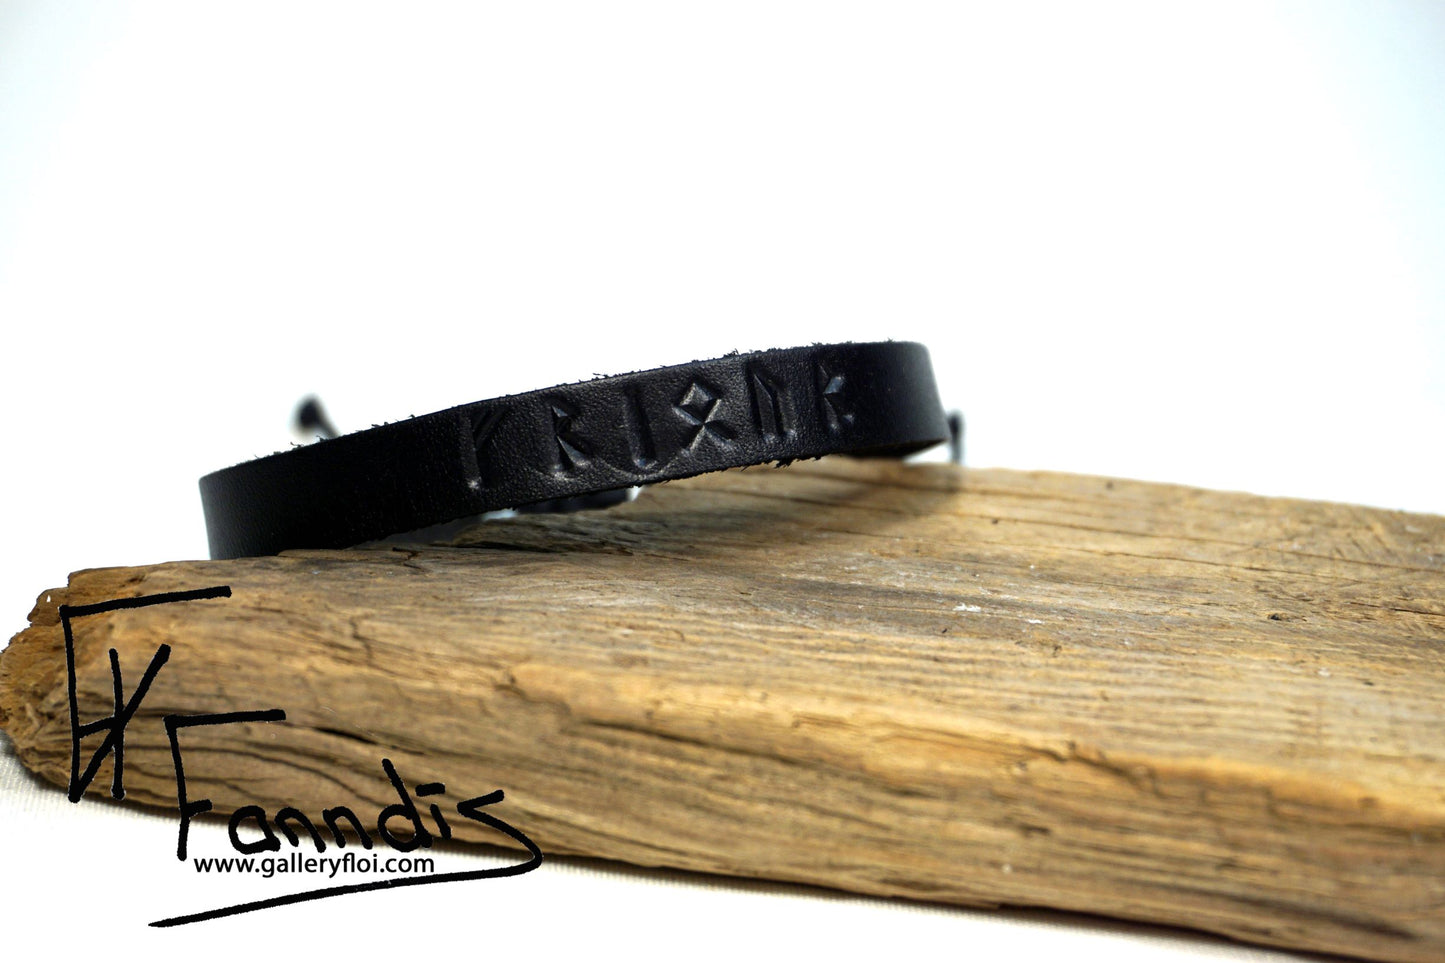 Leður armband með Víkinga rúnum (Friður) / Leather bracelet with Viking runes (Peace)